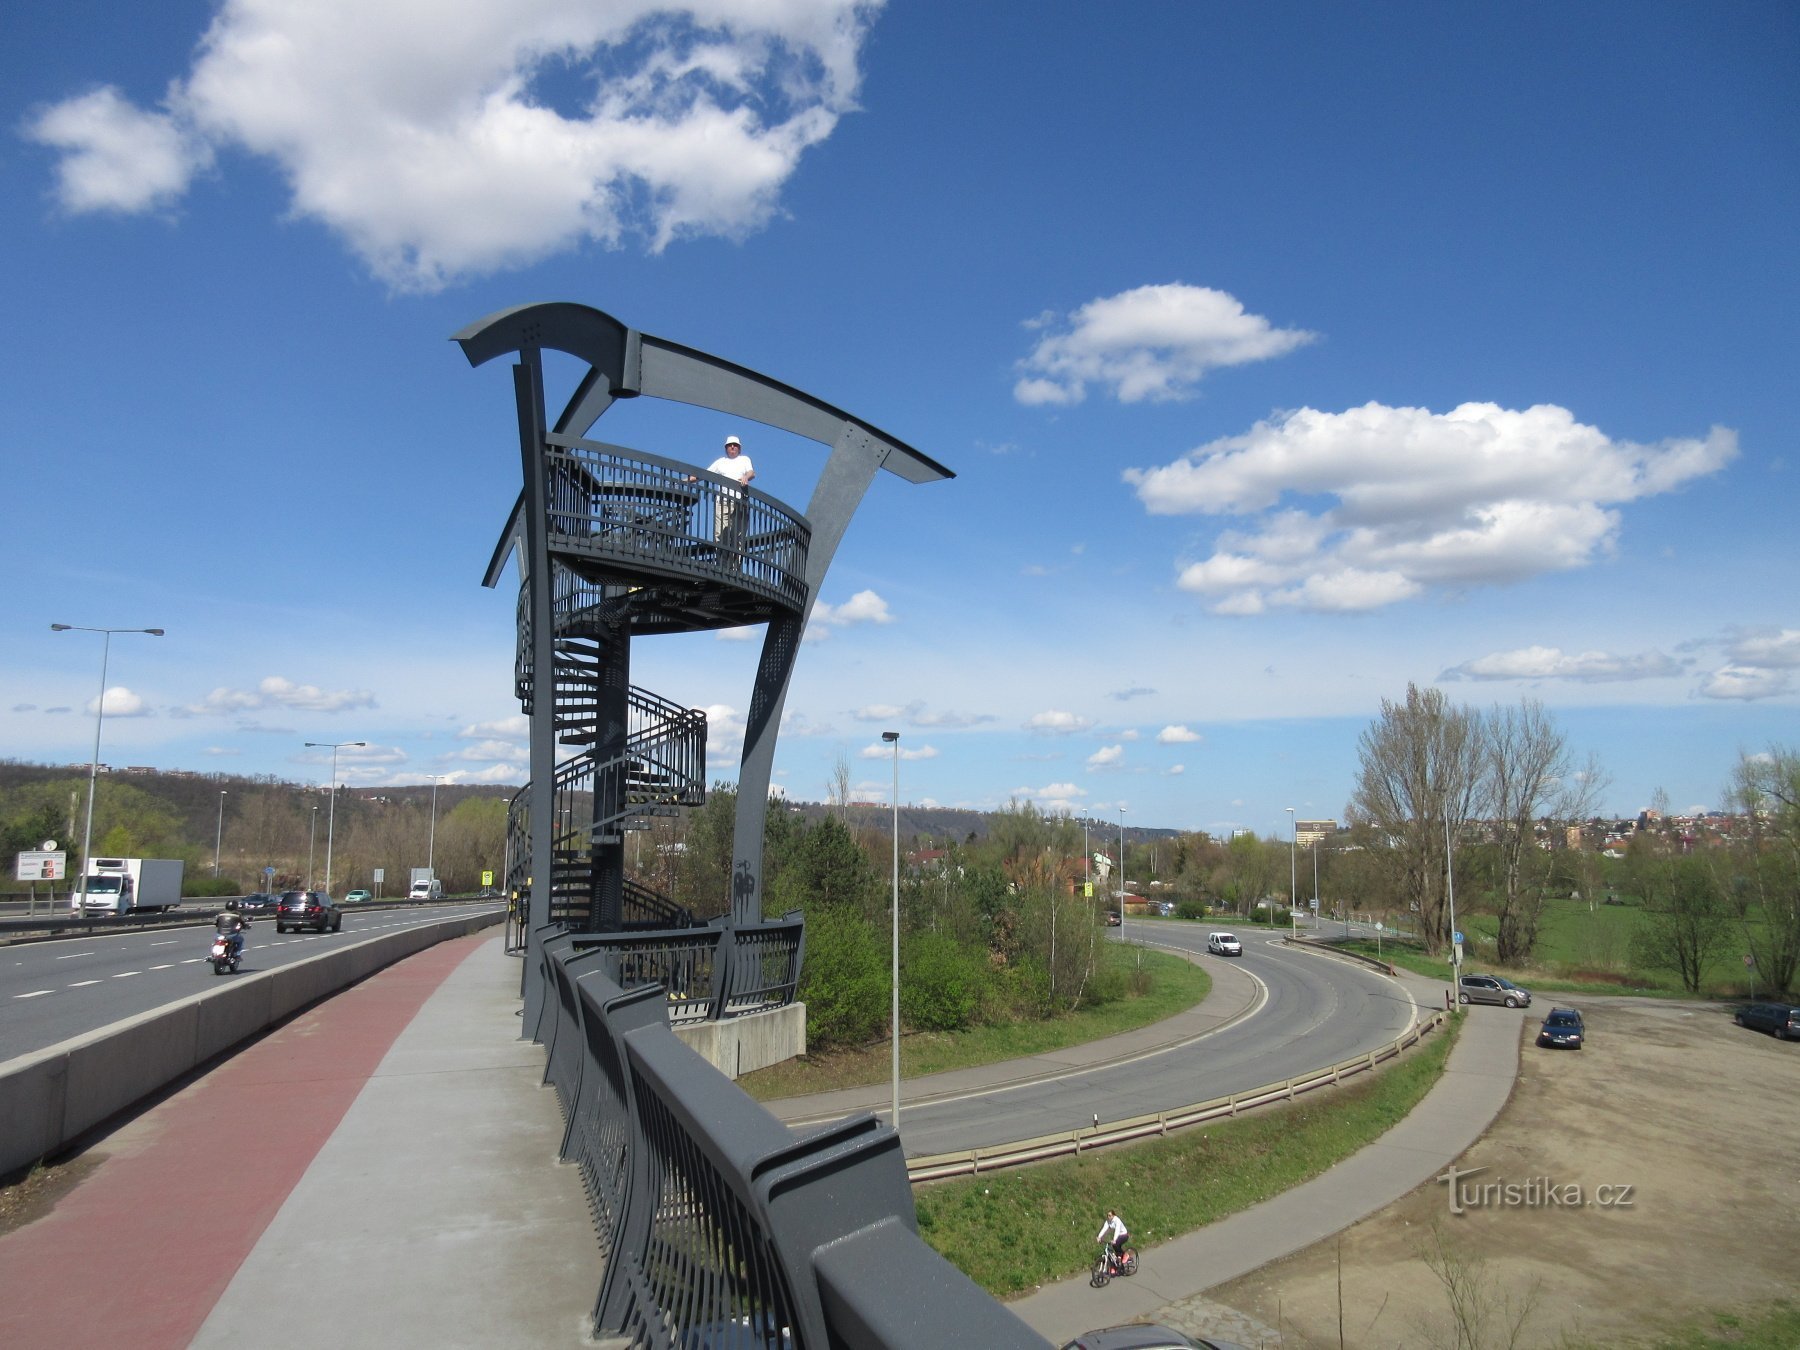 Lahovice - wieże widokowe mostu Lahovice i zbiegu rzek Berounki i Wełtawy